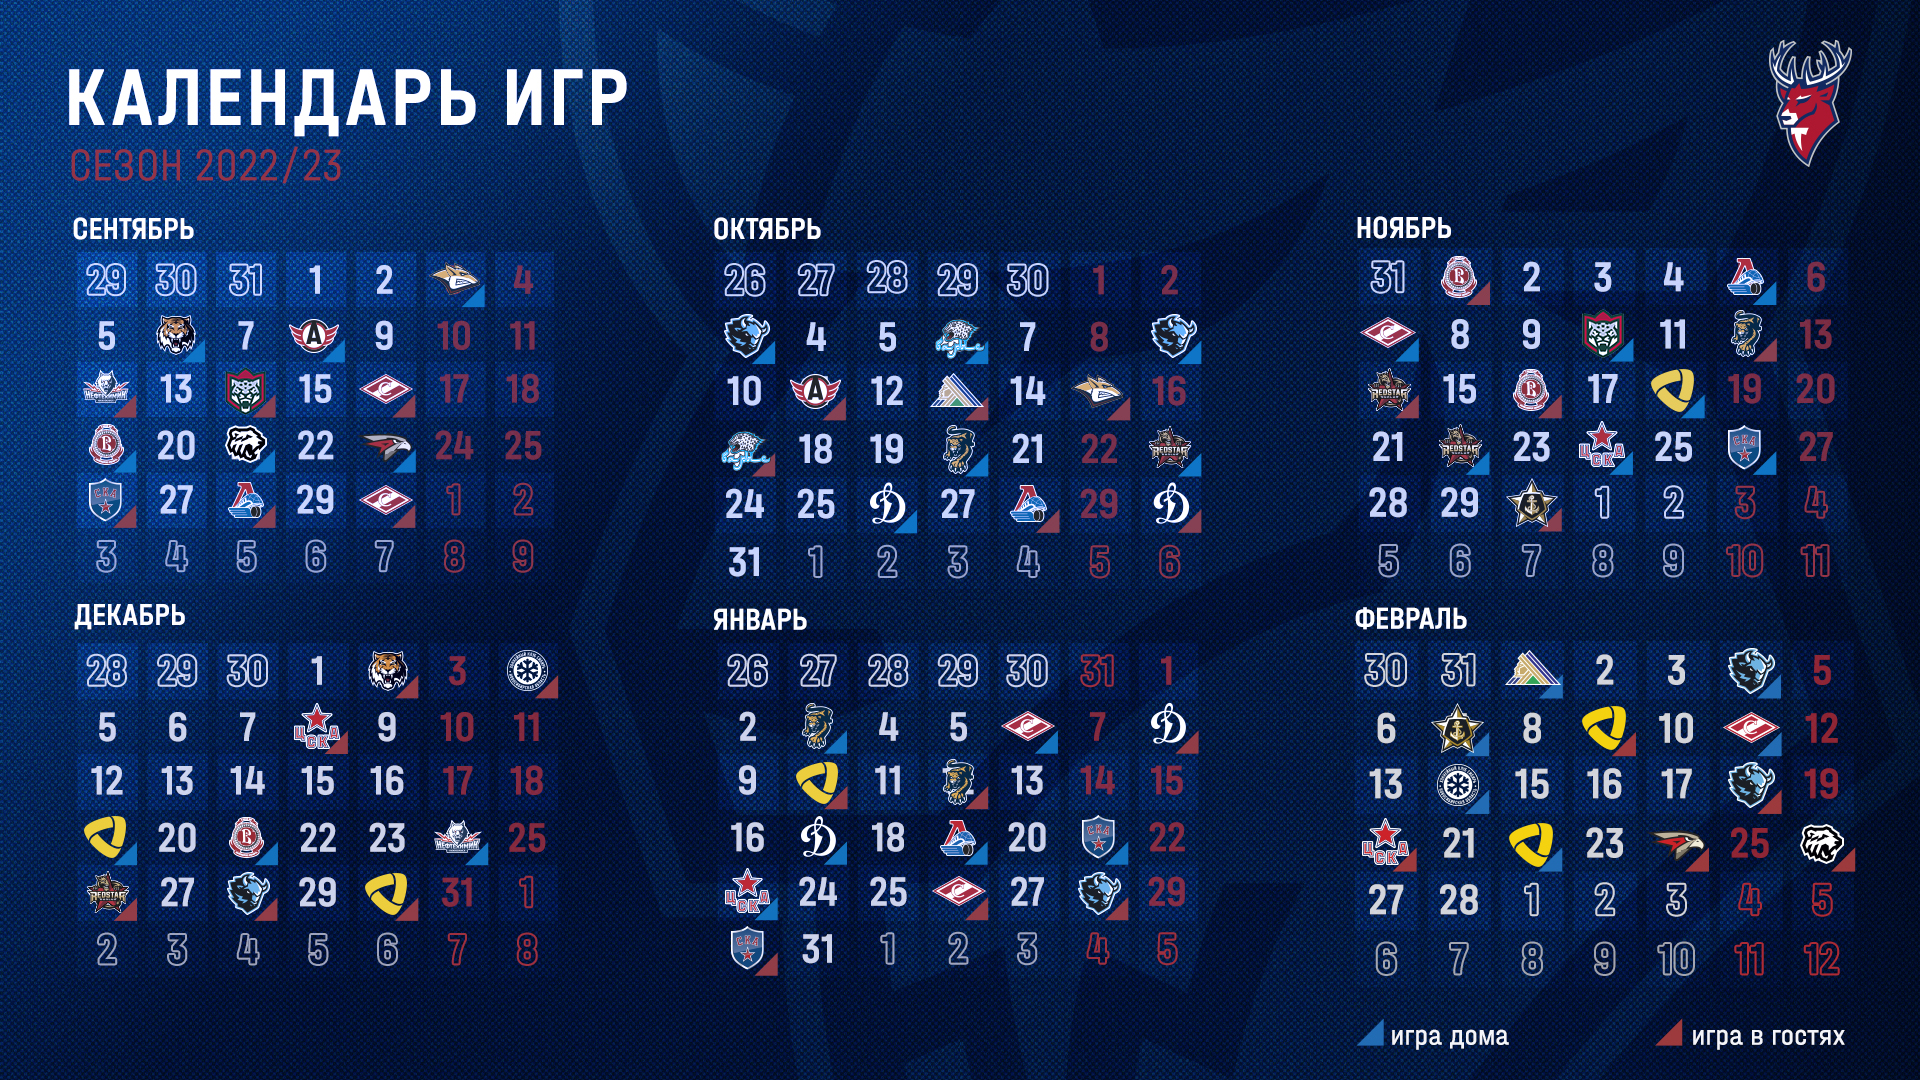 Опубликован календарь регулярного чемпионата КХЛ в новом сезоне |  Информационное агентство «Время Н»